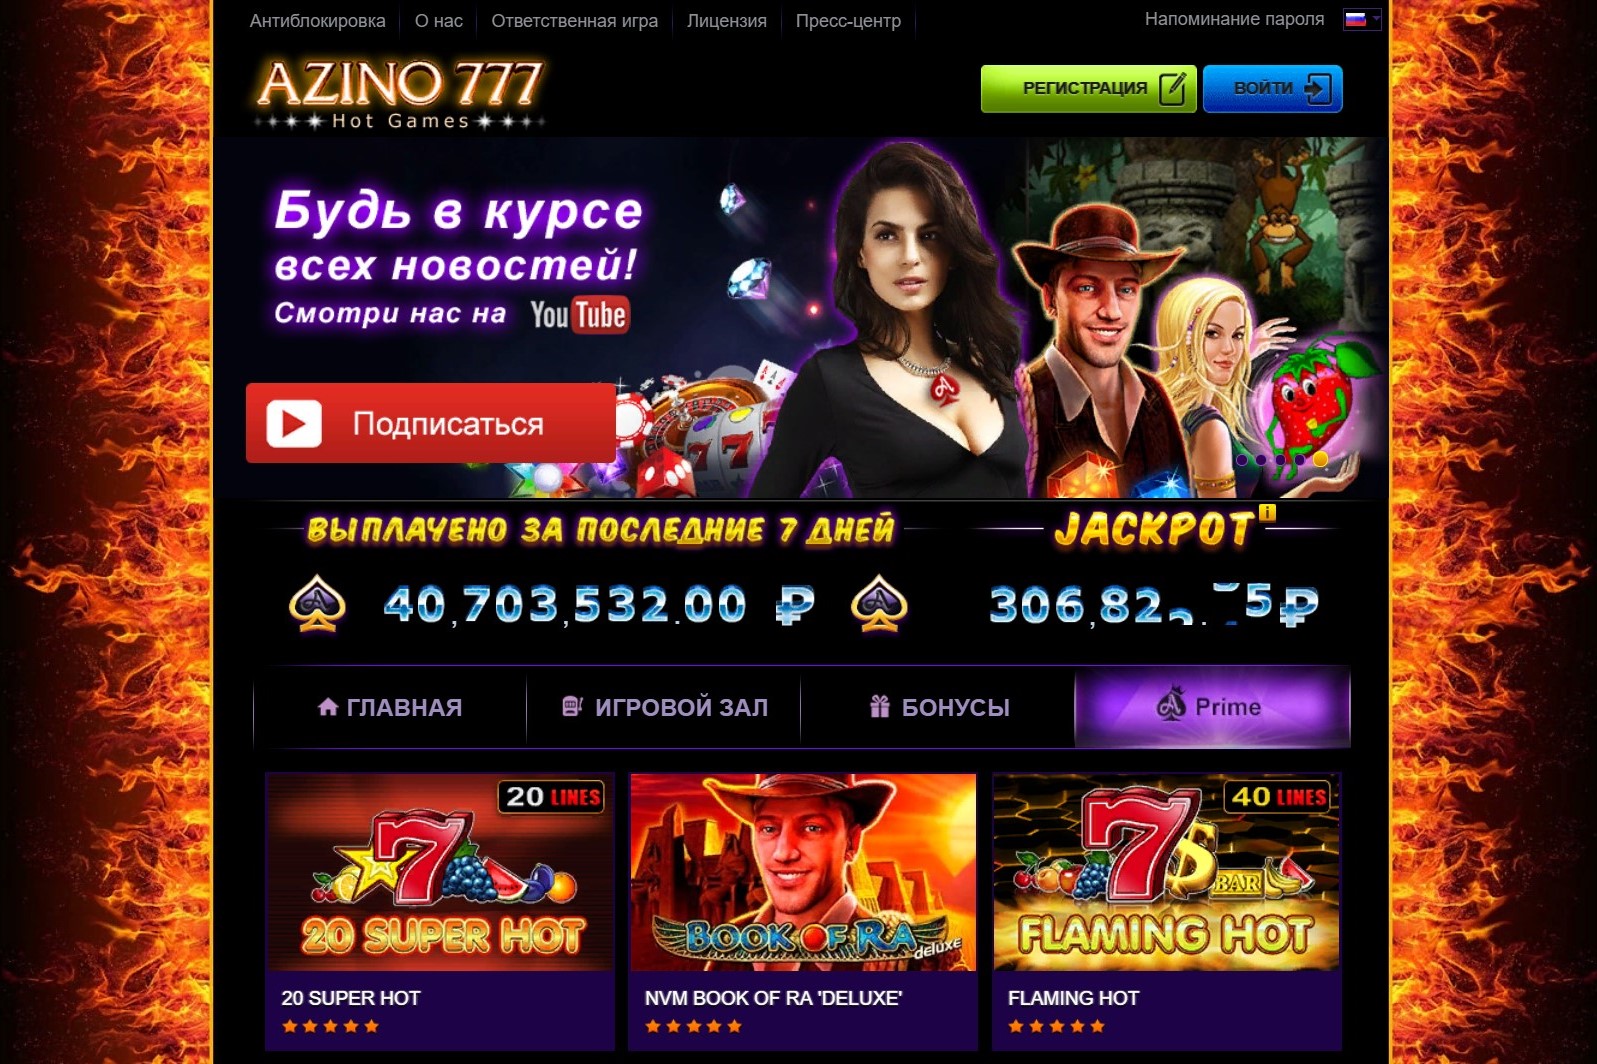 Pm casino 777 официальный сайт игровые автоматы онлайн максбет 0 1